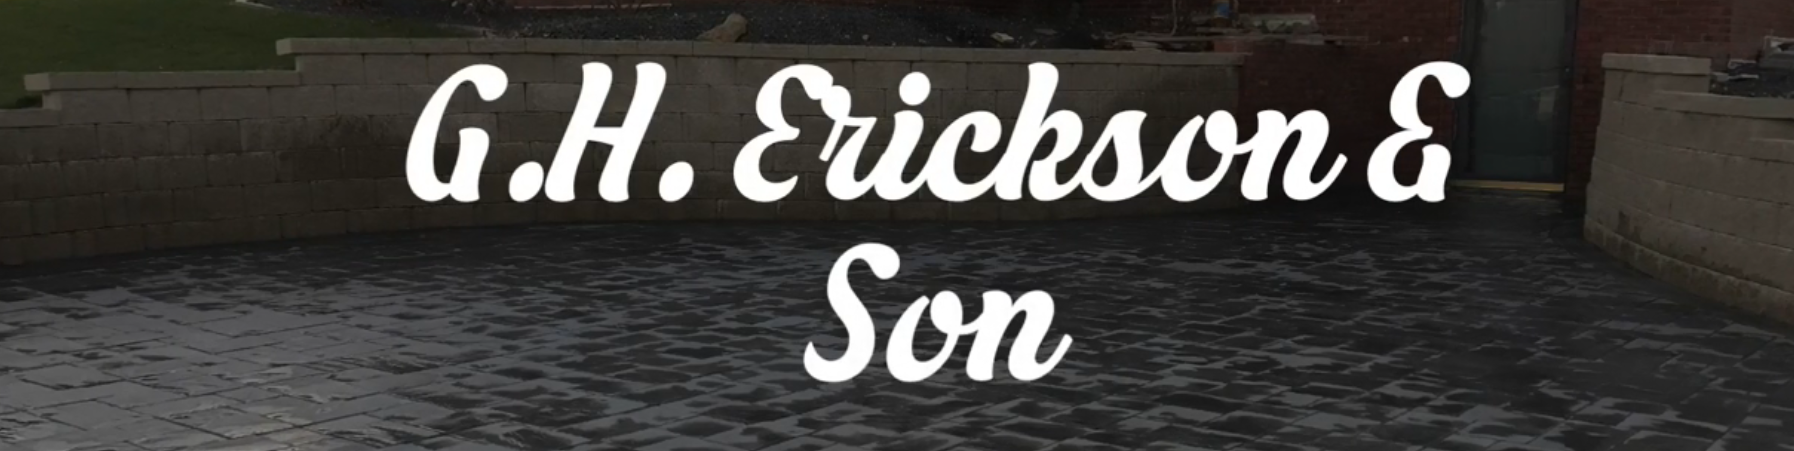 G H Erickson & Son Logo